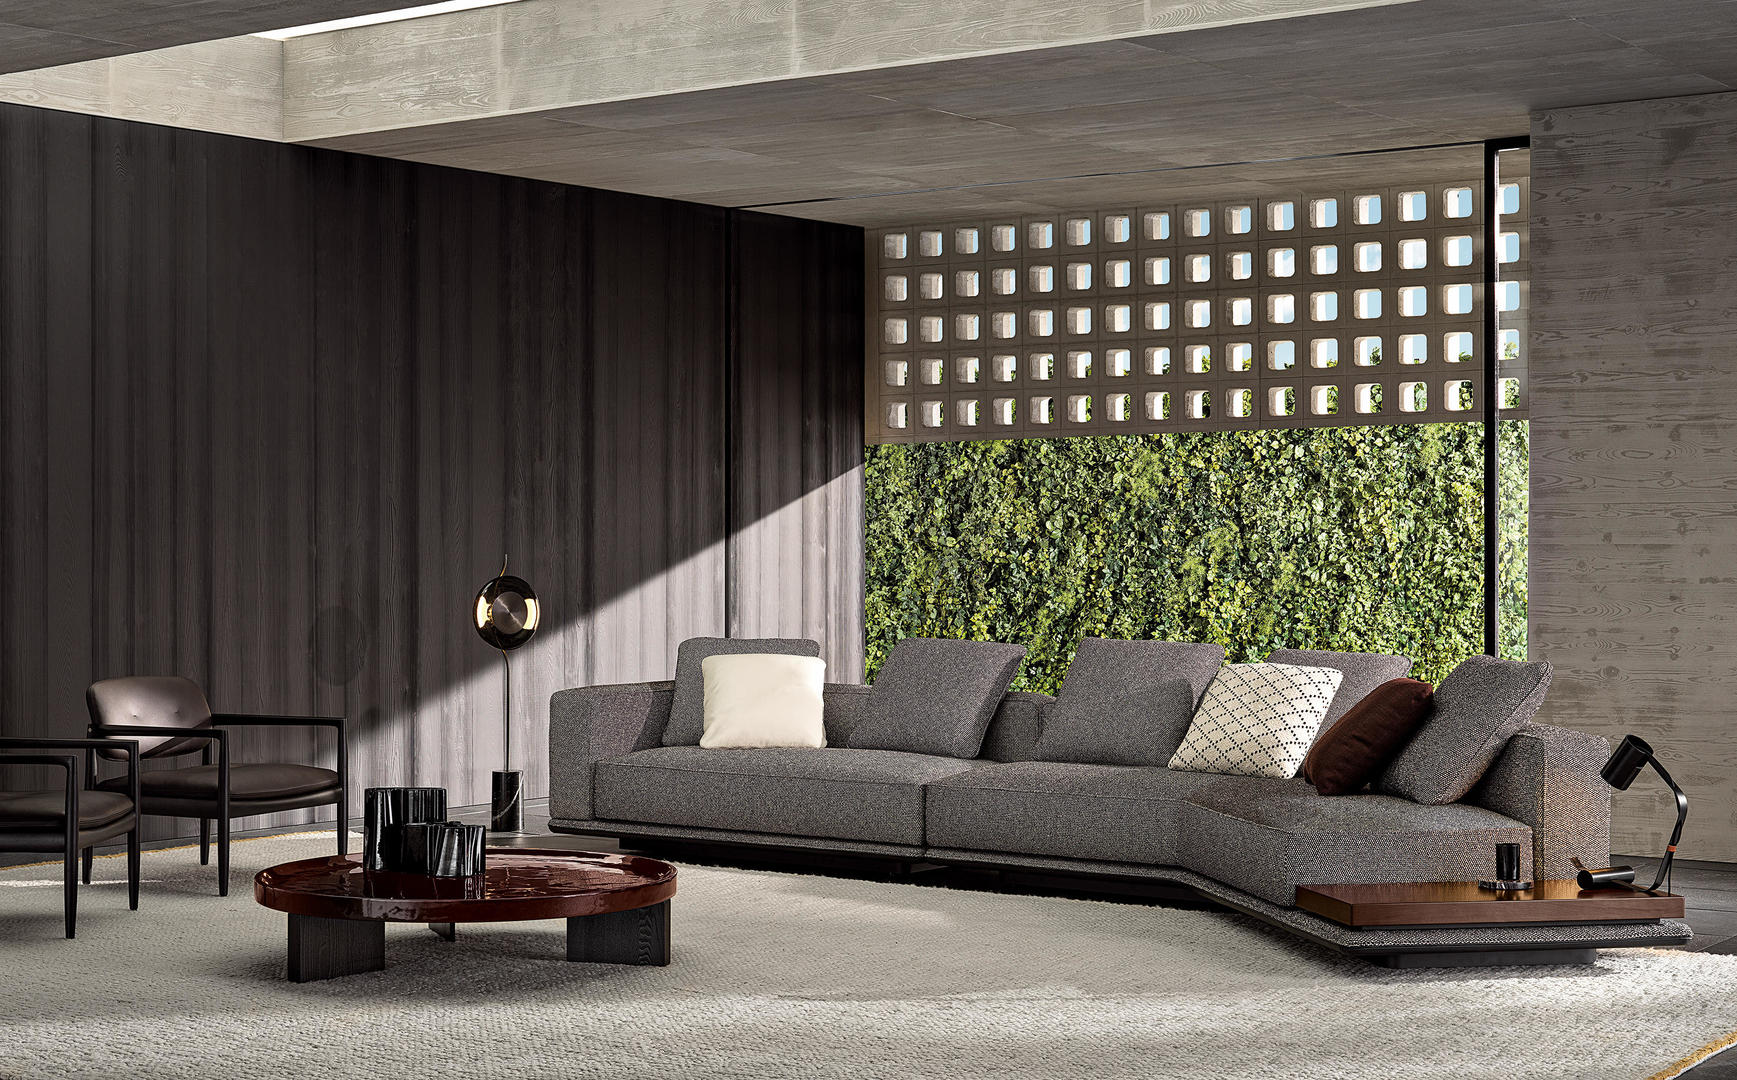 HORA Barneveld Minotti Horizonte bank modulaire sofa design meubelen designmeubelen 4.jpg